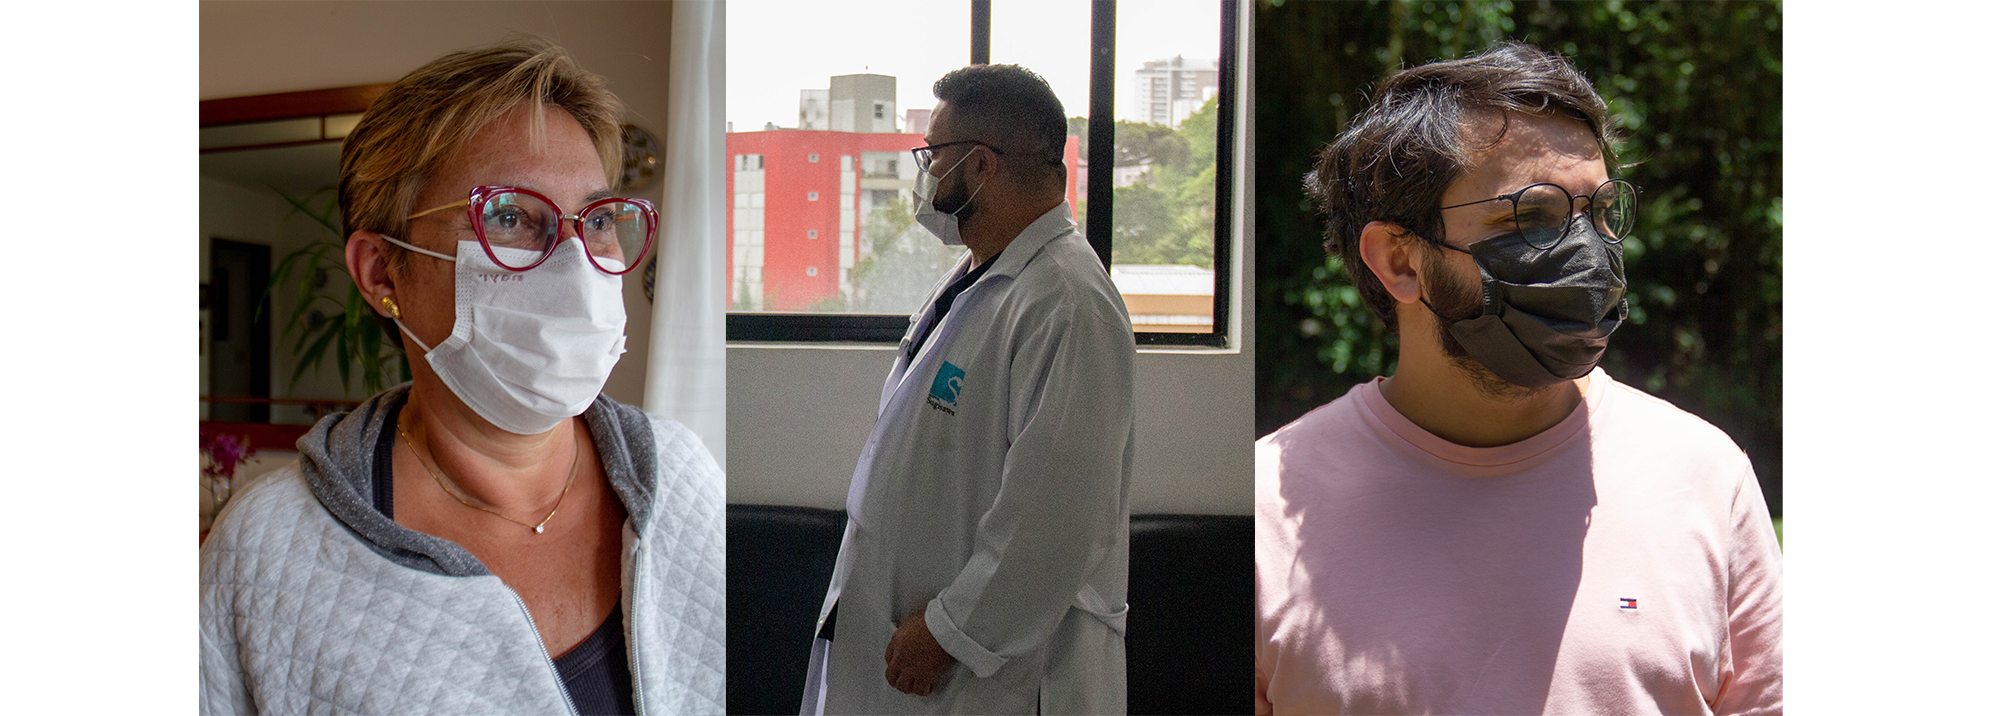 O enfrentamento da pandemia pelo olhar de três profissionais da saúde